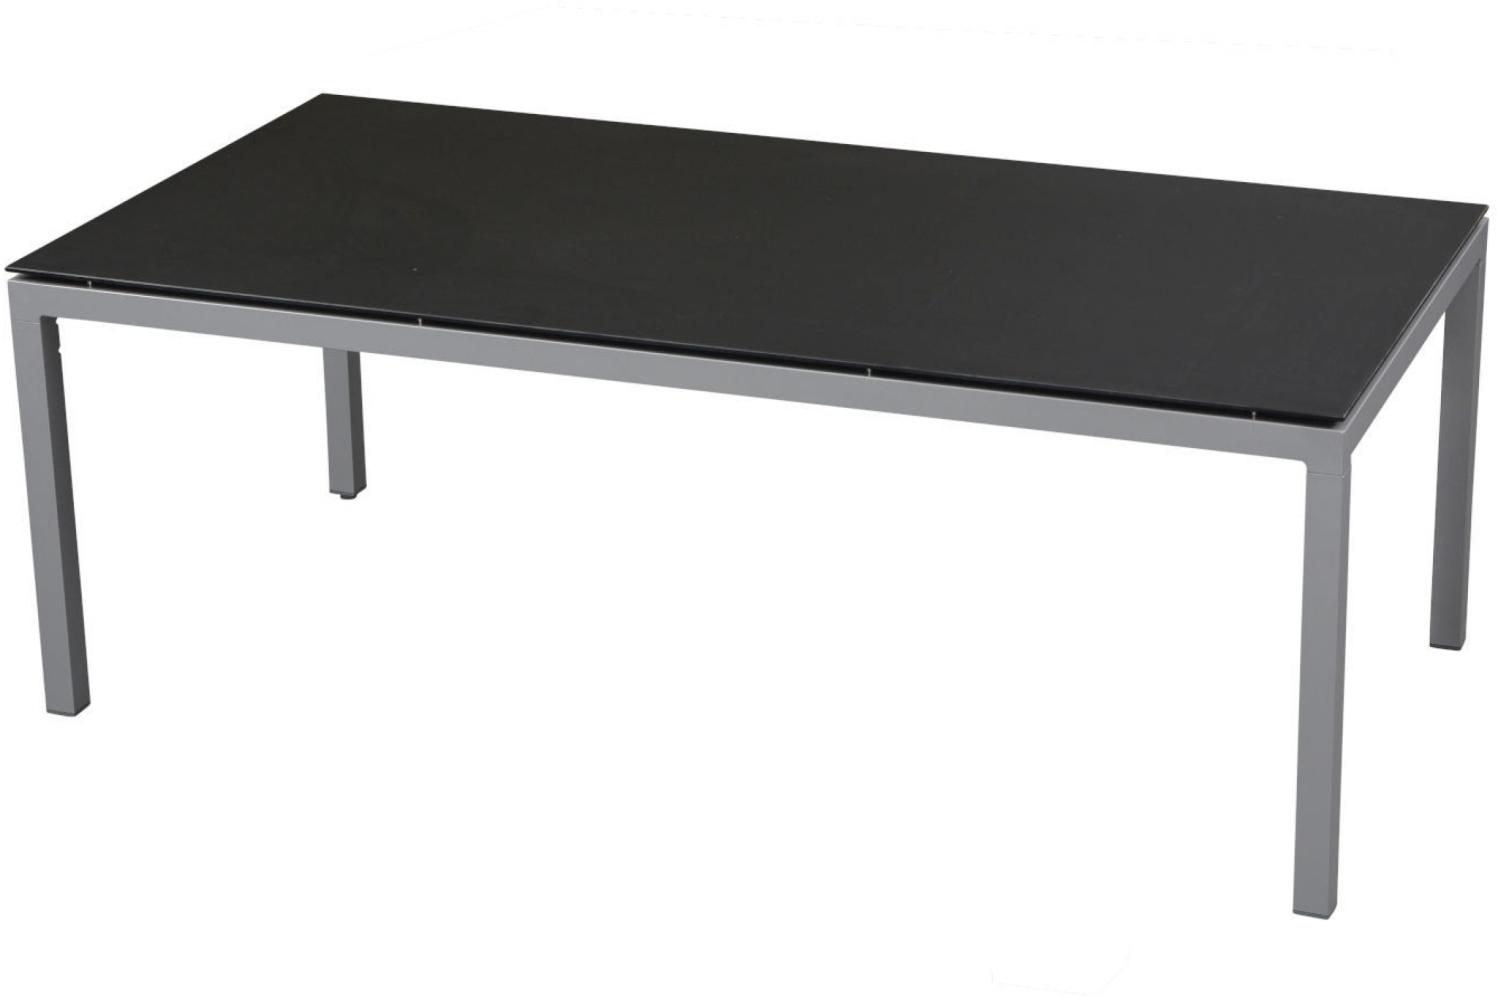 Inko Gartentisch Aluminium silber 160x90 cm Terrassentisch Tischplatte nach Wahl Deropal weiß Bild 1